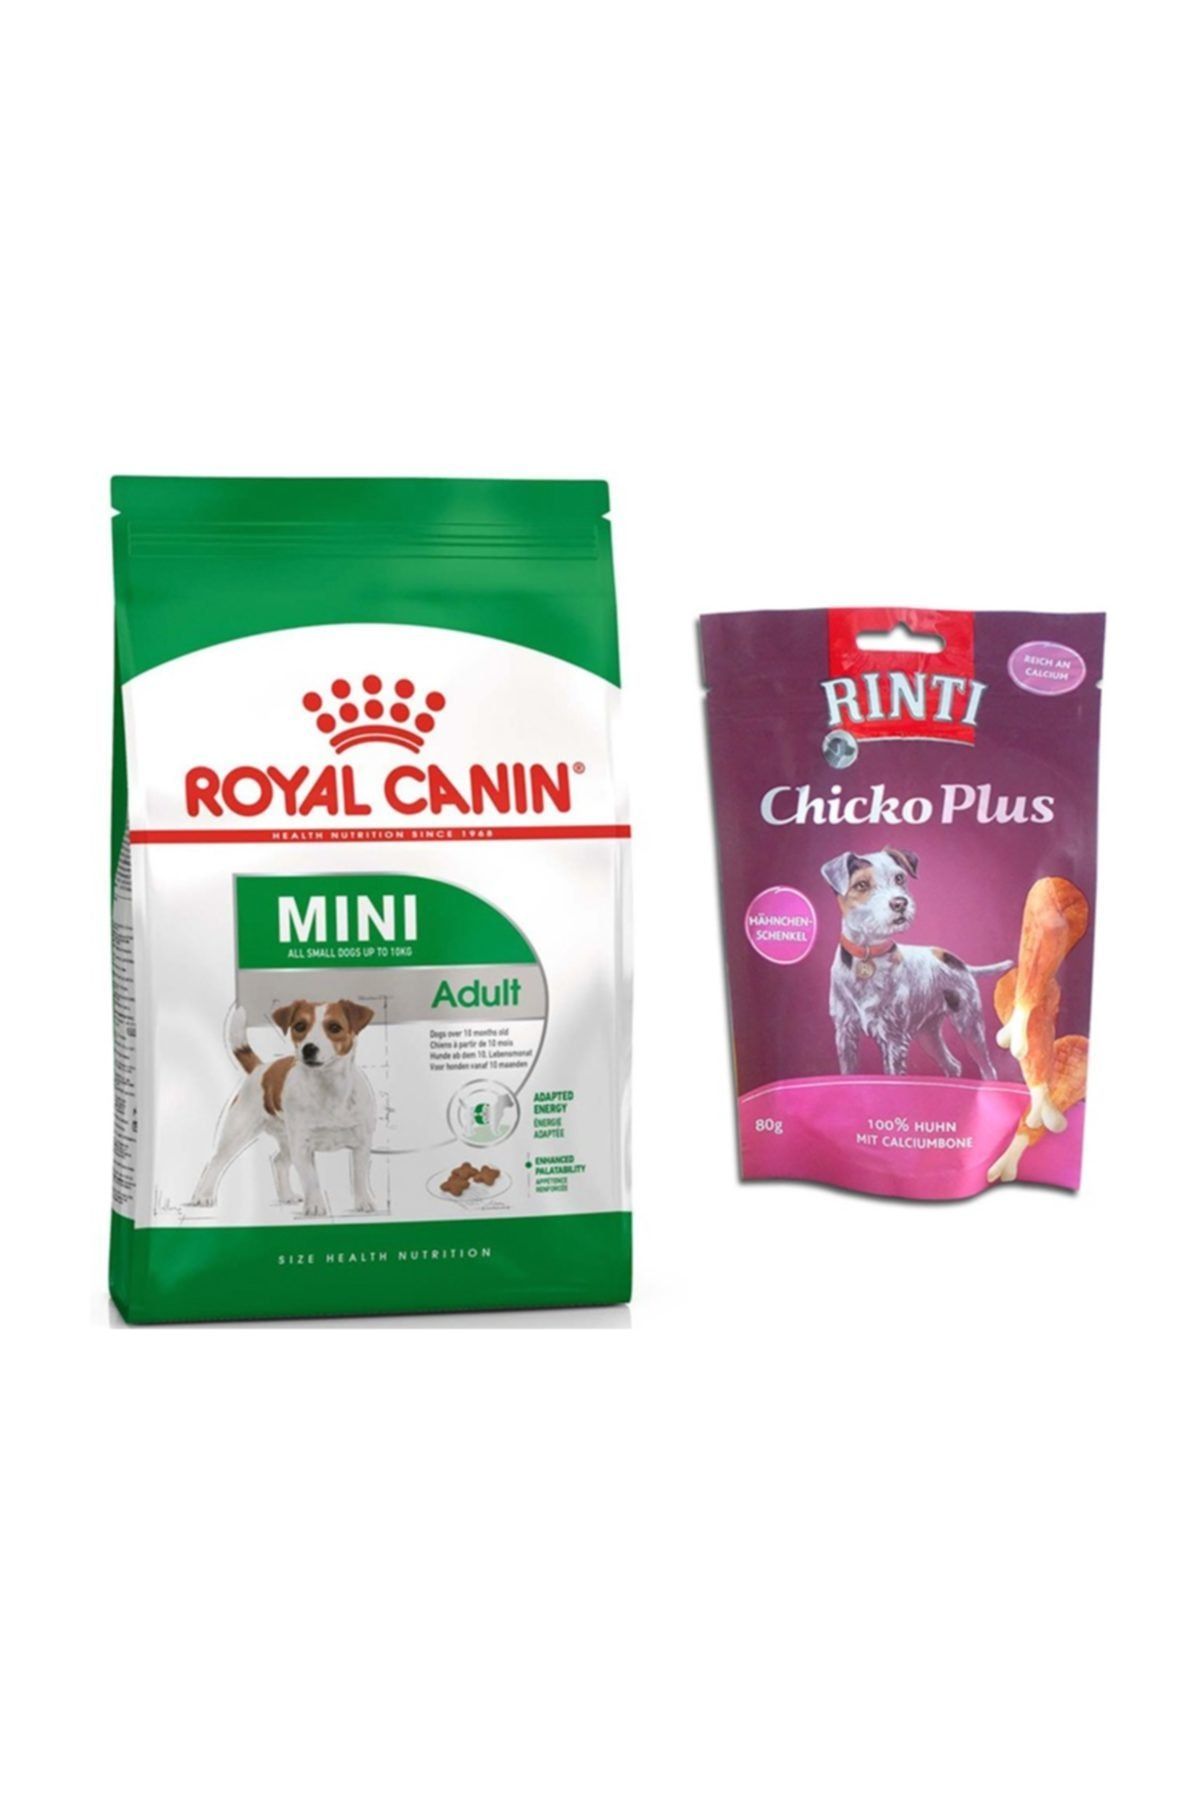 Royal Canin Adult Yetişkin Small Mini Küçük Irk Köpek Maması 2 Kg + Rinti Butlu Köpek Ödülü (original)